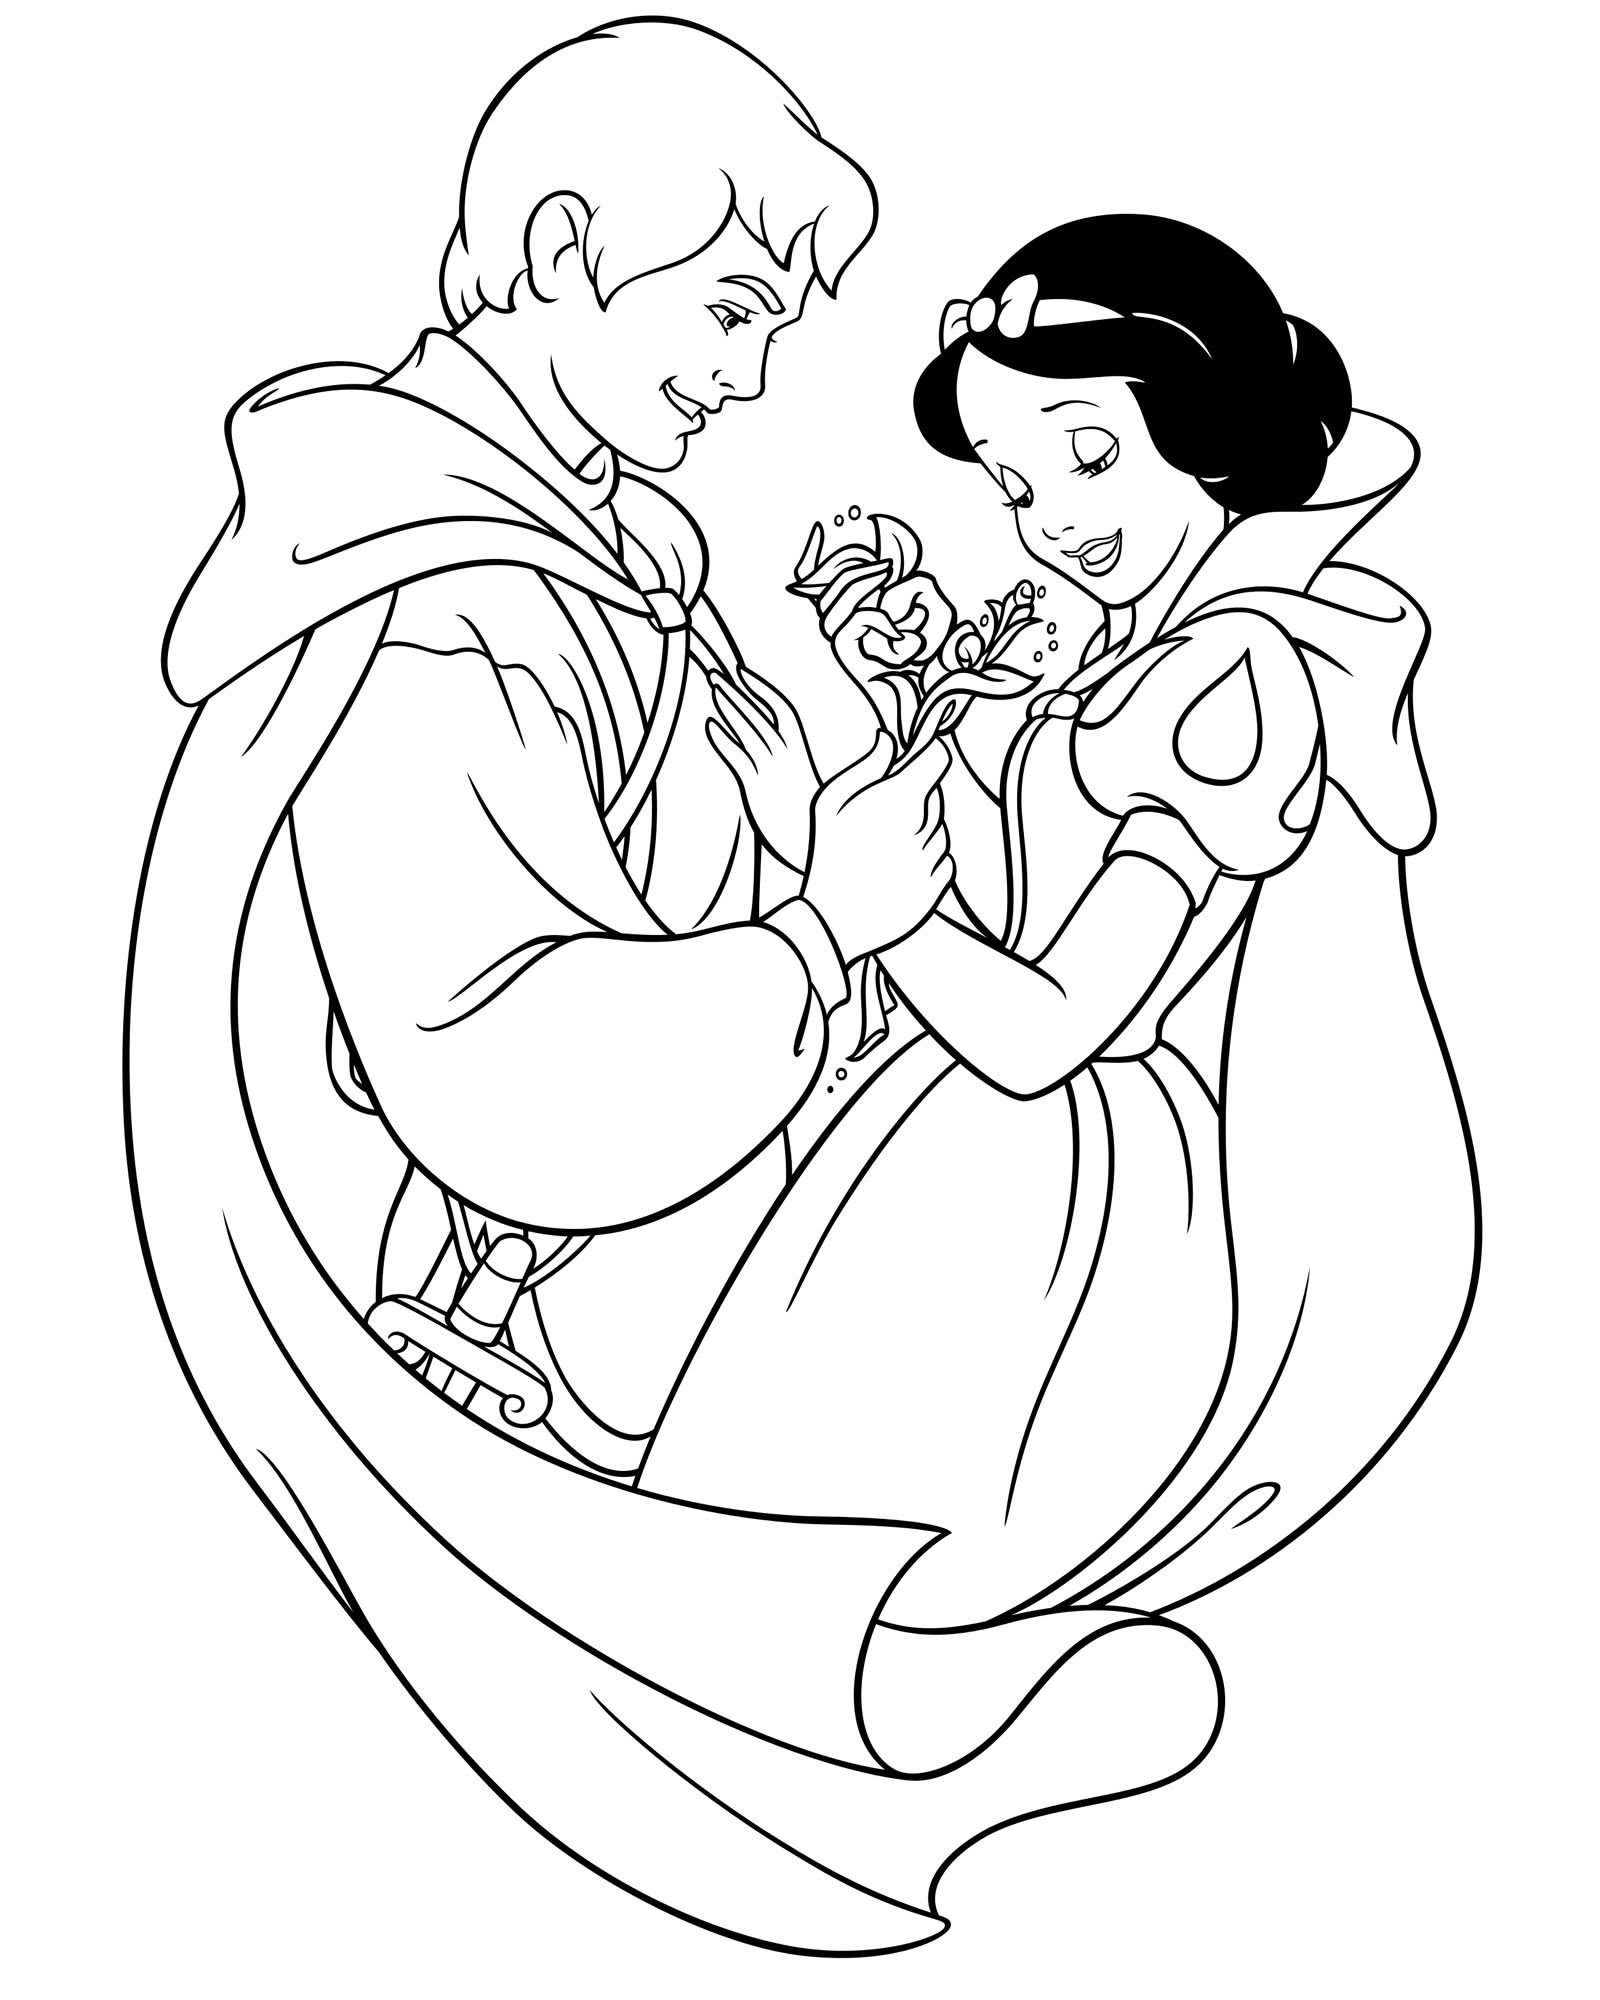 Белоснежка и принц раскраска для детей